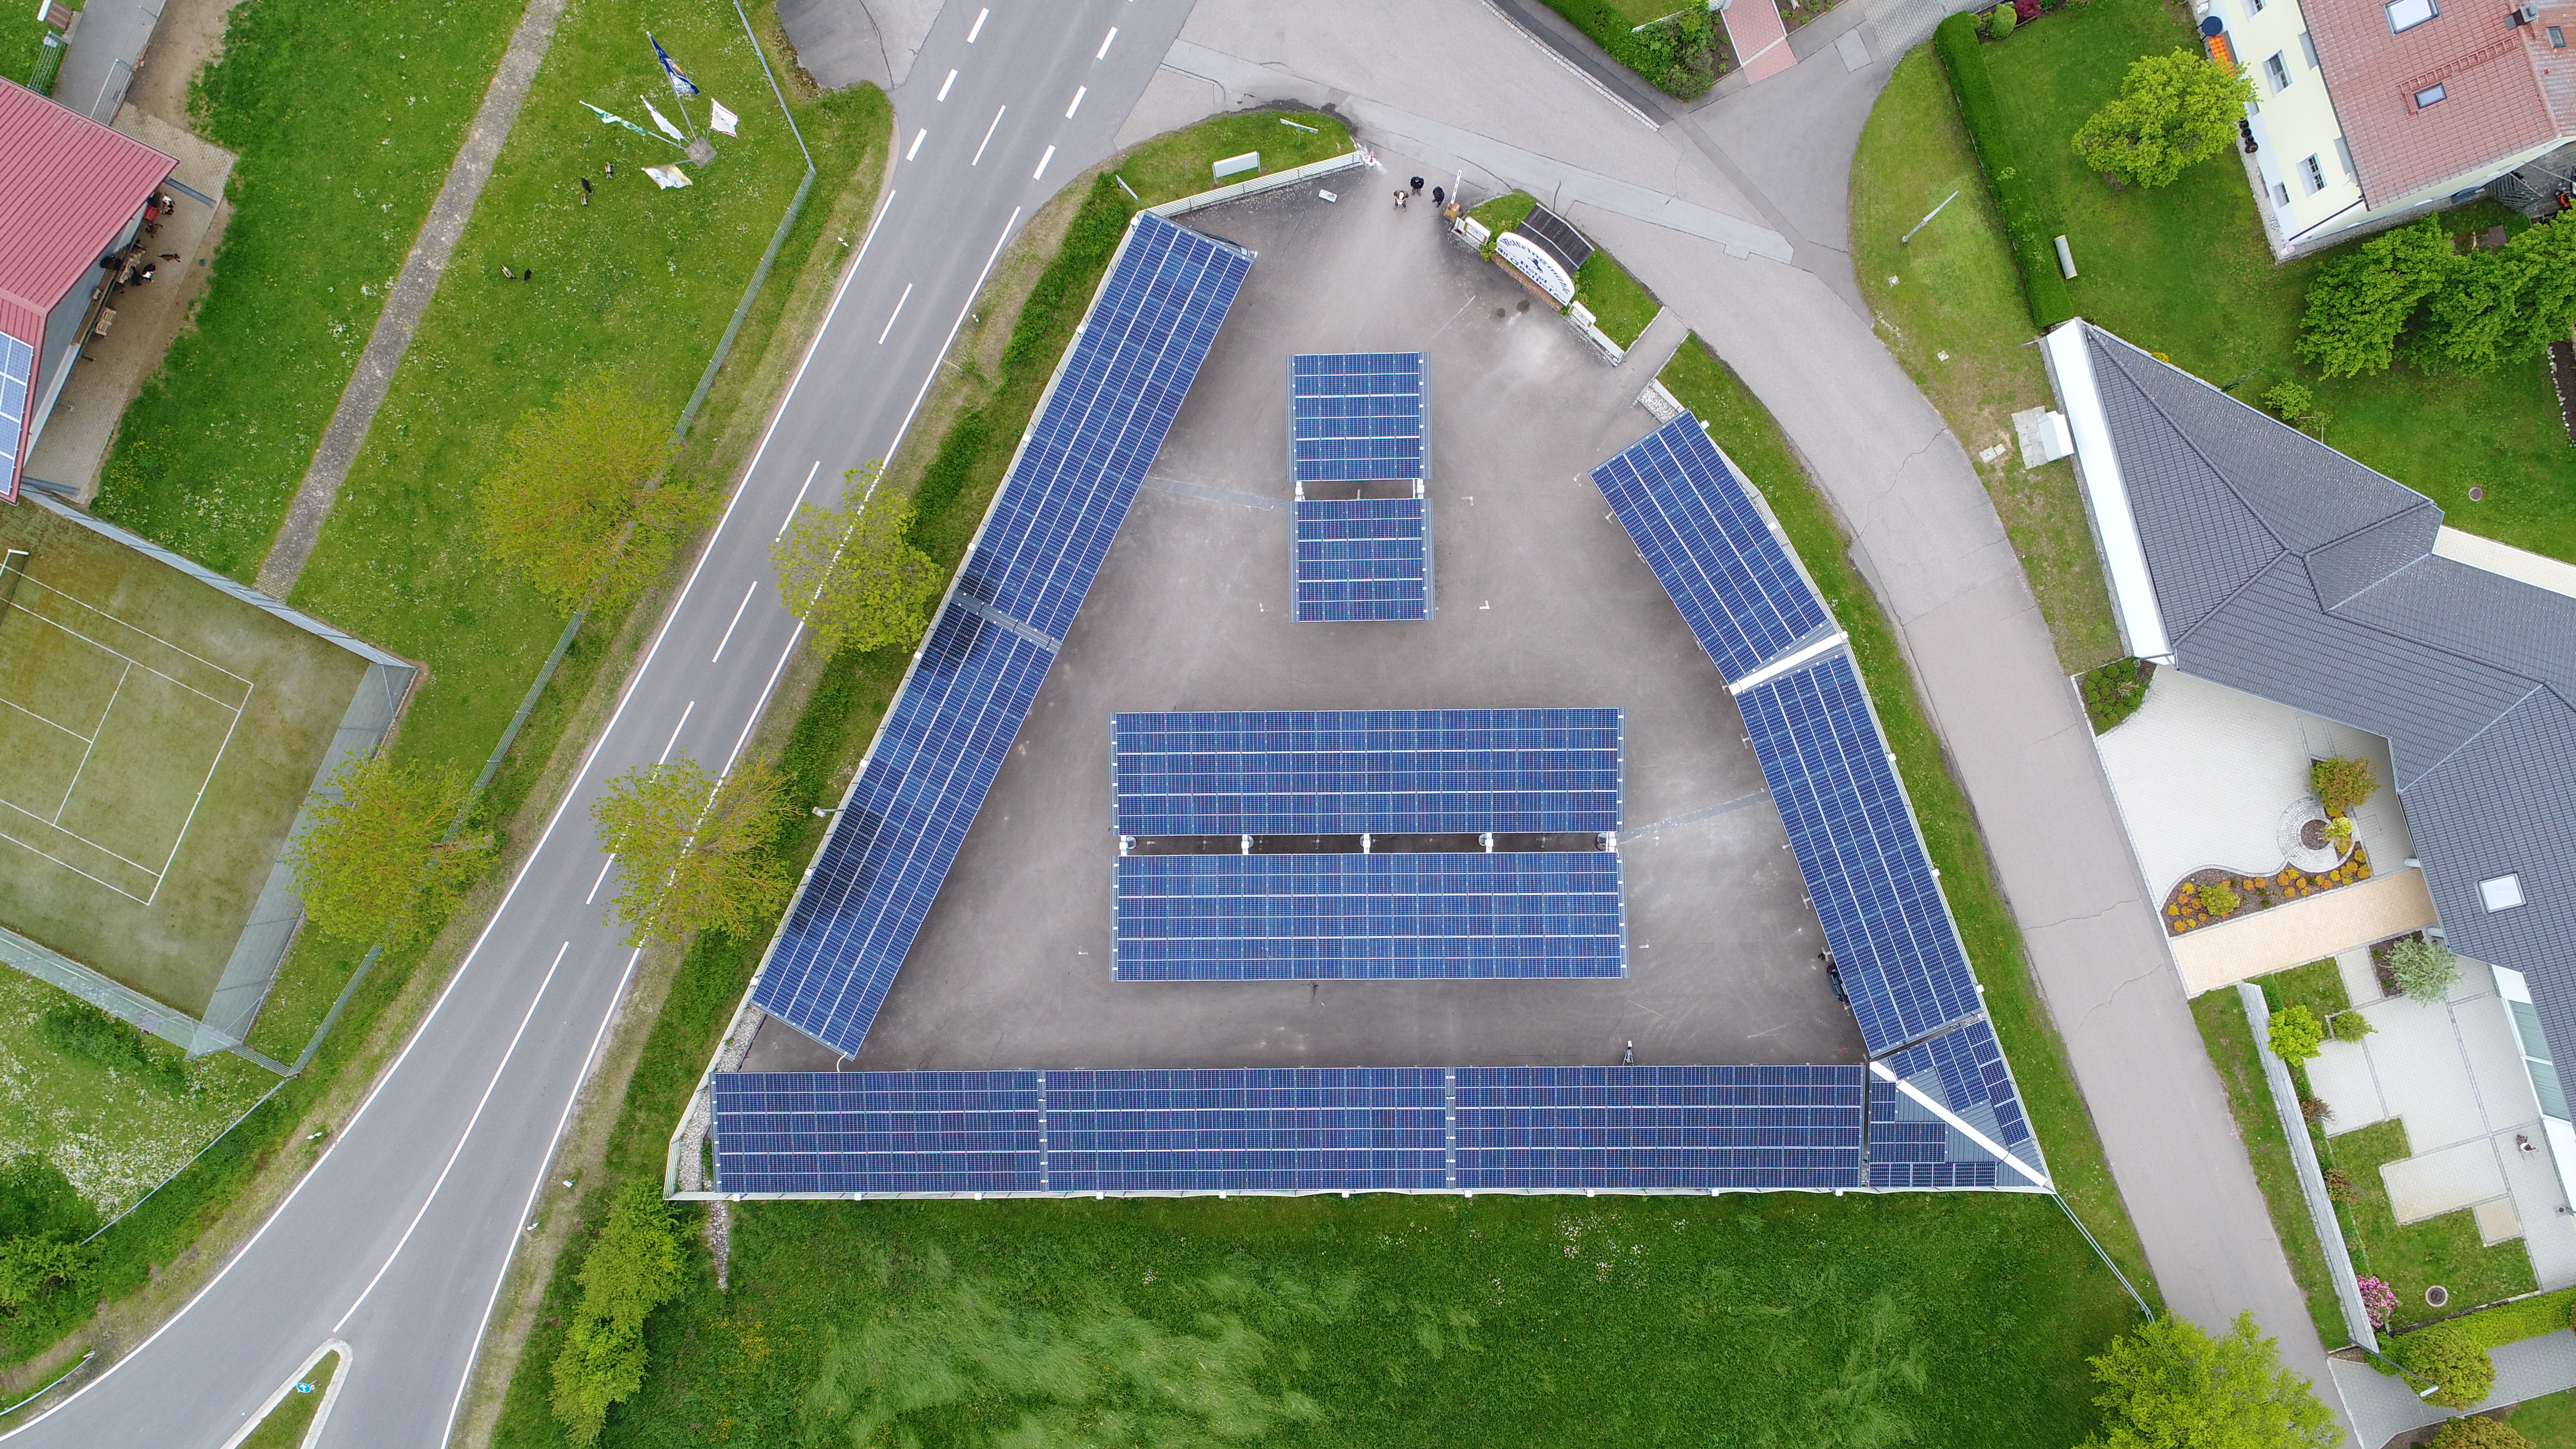 Solarcarport fundiert mit Schraubfundamenten